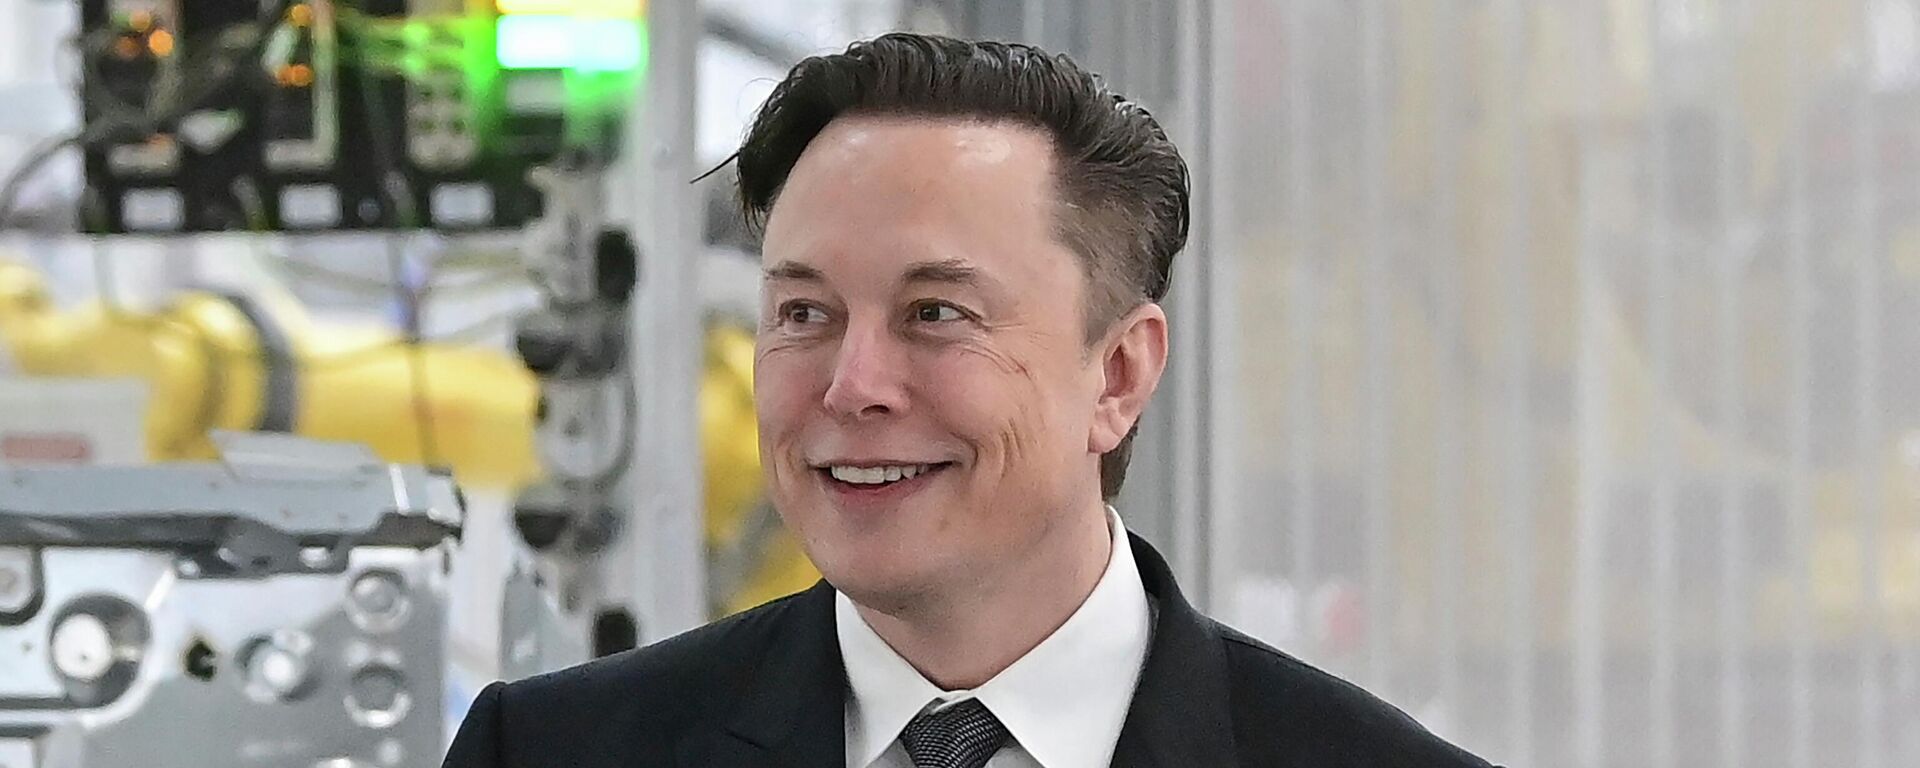  Tesla CEO Elon Musk attends the opening of the Tesla factory Berlin Brandenburg in Gruenheide, Germany on March 22, 2022. - Sputnik International, 1920, 24.10.2022